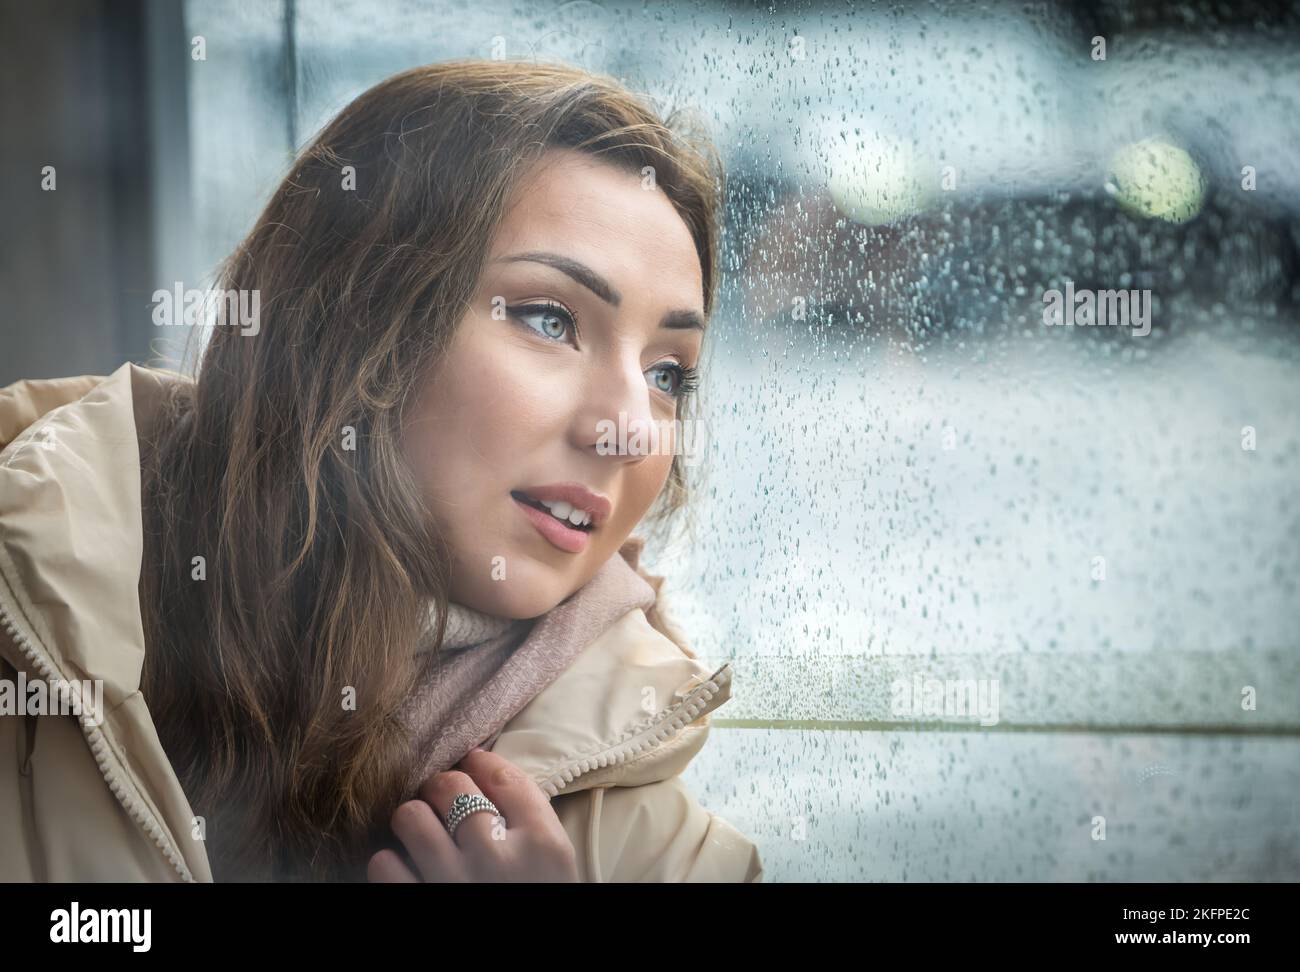 Eine hübsche junge Frau oder ein Model wartet wehmütig an einer Bushaltestelle an einem regnerischen Tag, Edinburgh, Schottland, Großbritannien Stockfoto